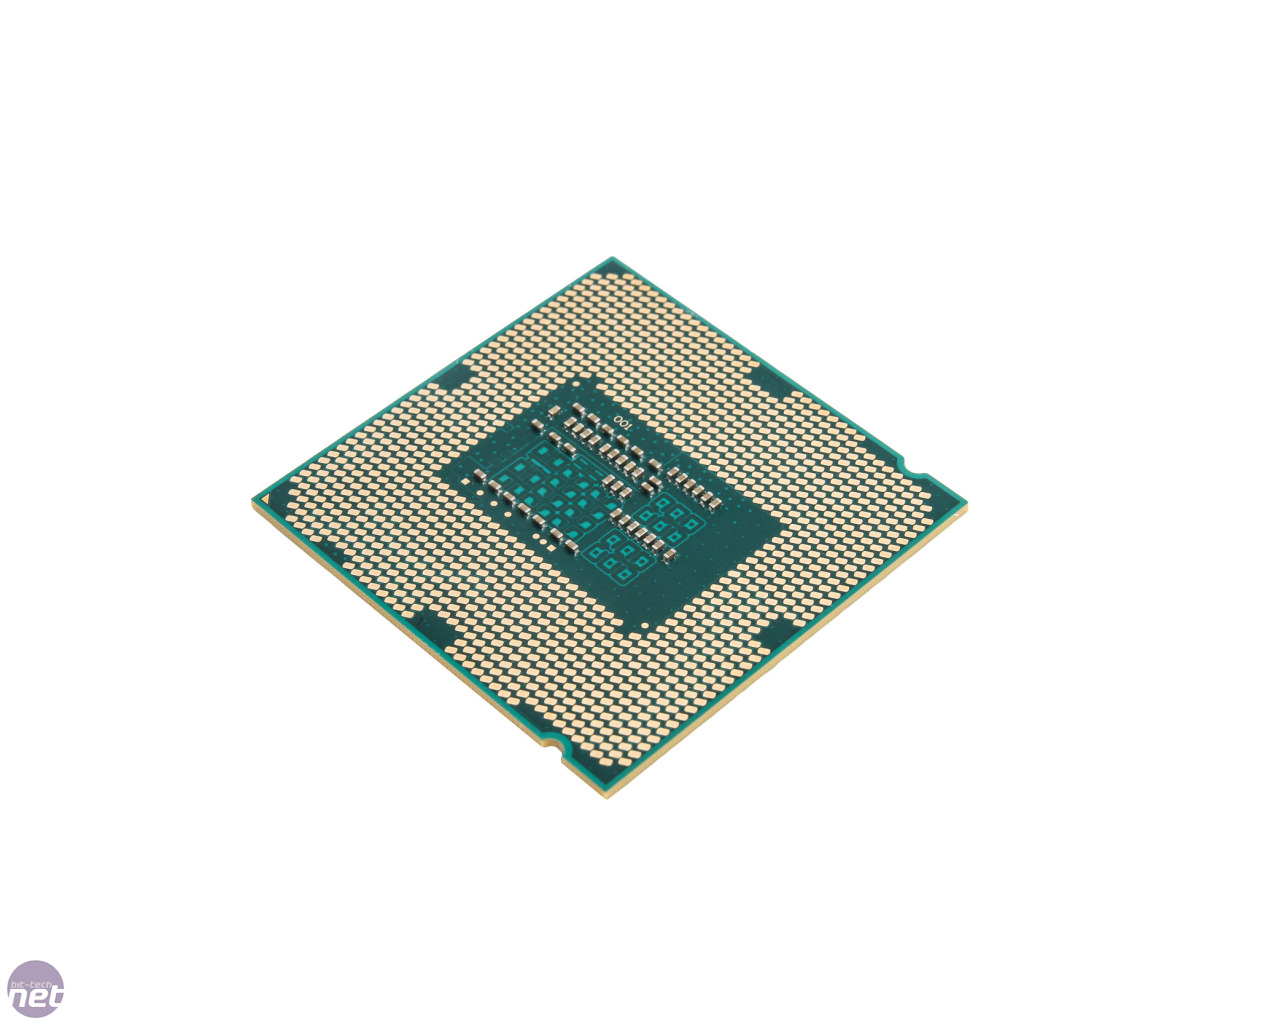 Core i5 4400. Intel Core i3 4130. Intel Core i3-4130 Haswell lga1150, 2 x 3400 МГЦ. Микропроцессор Core i3. I5 4400.